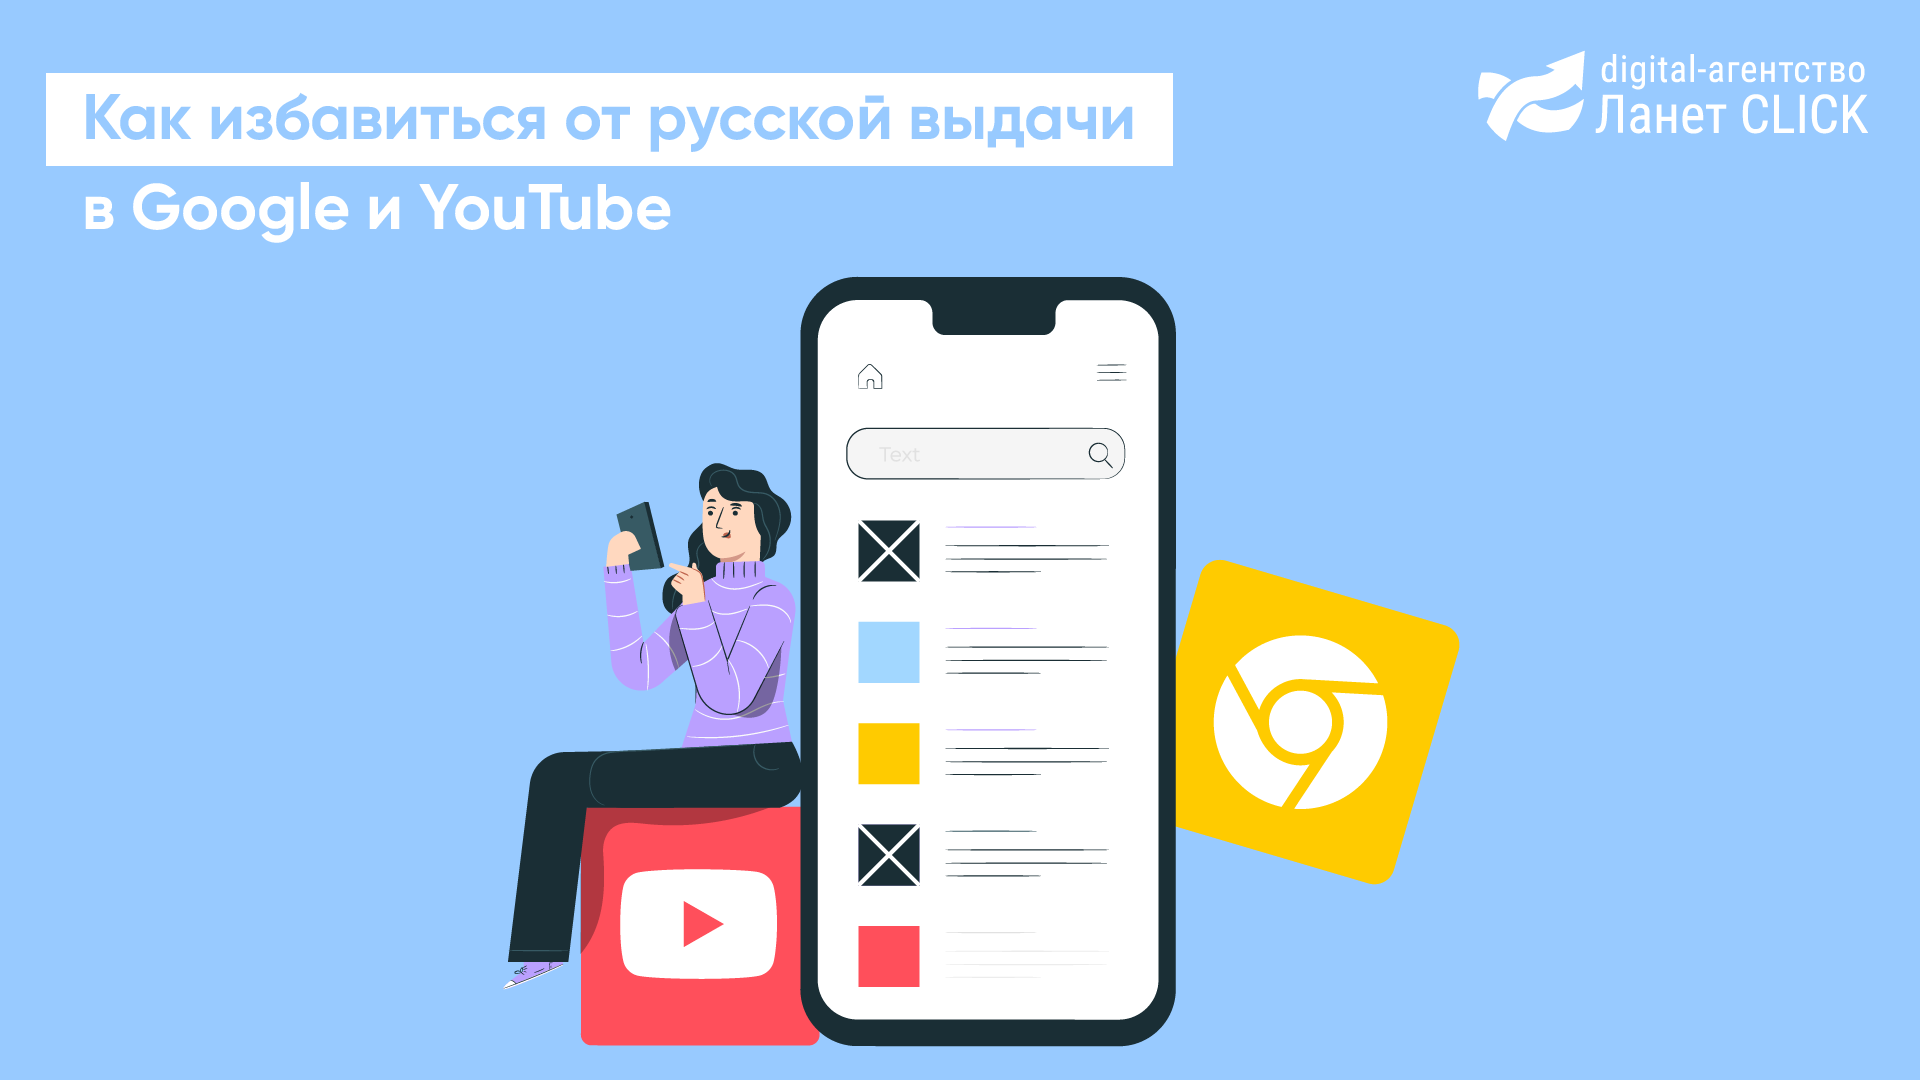 Как избавиться от российской выдачи в Google и YouTube